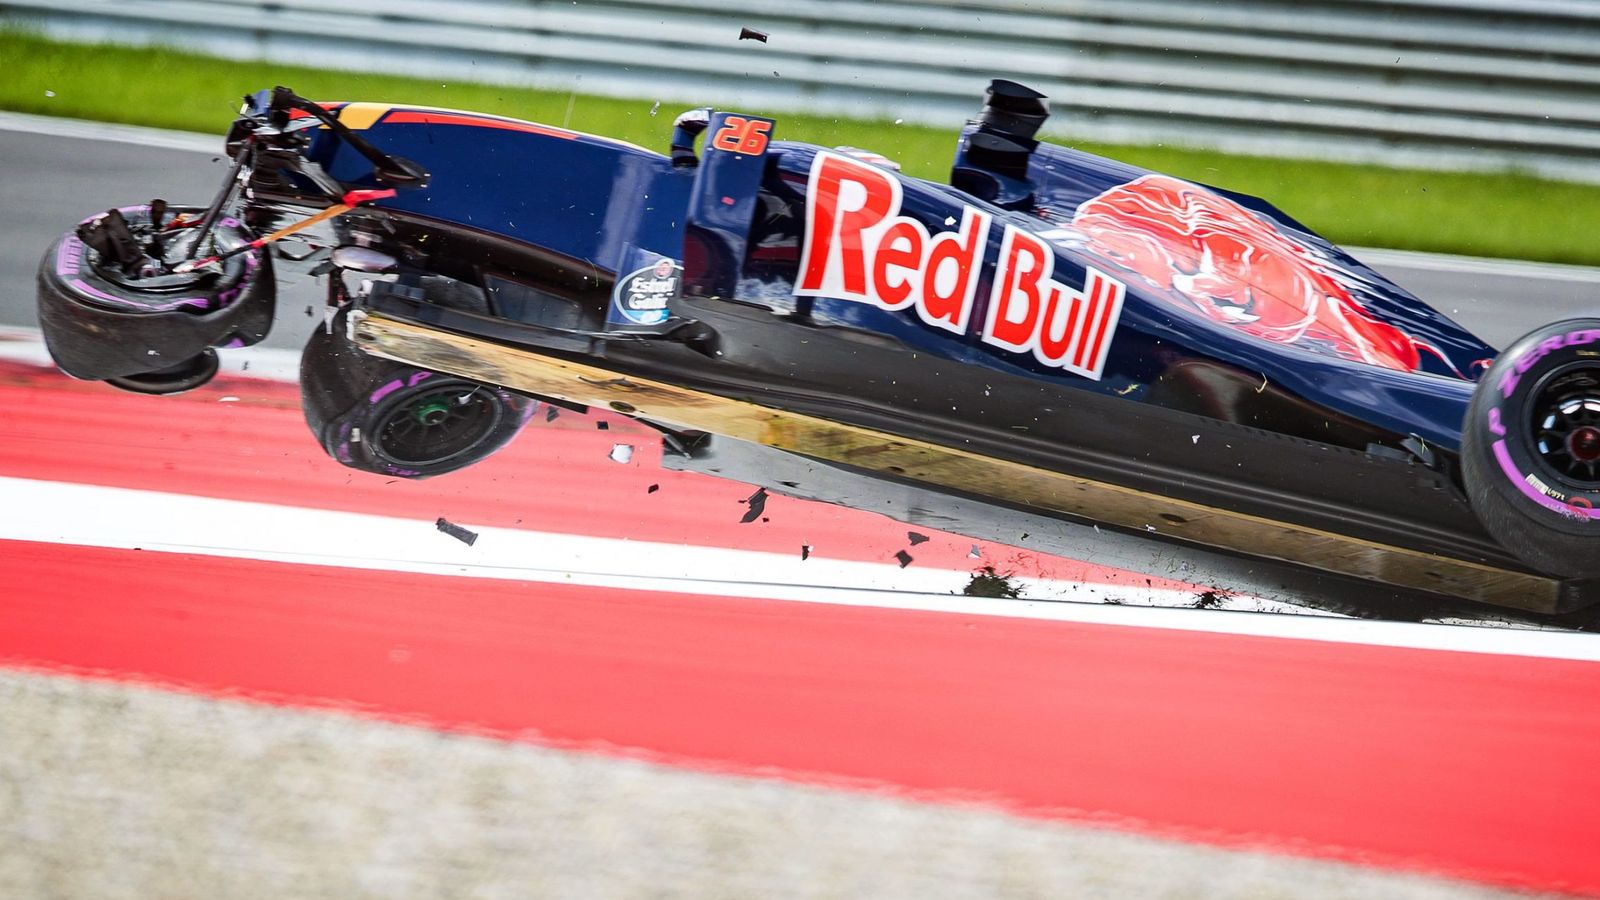 Foto: El Toro Rosso de Kvyat levantando el vuelo tras romper la suspensión trasera en clasificación.